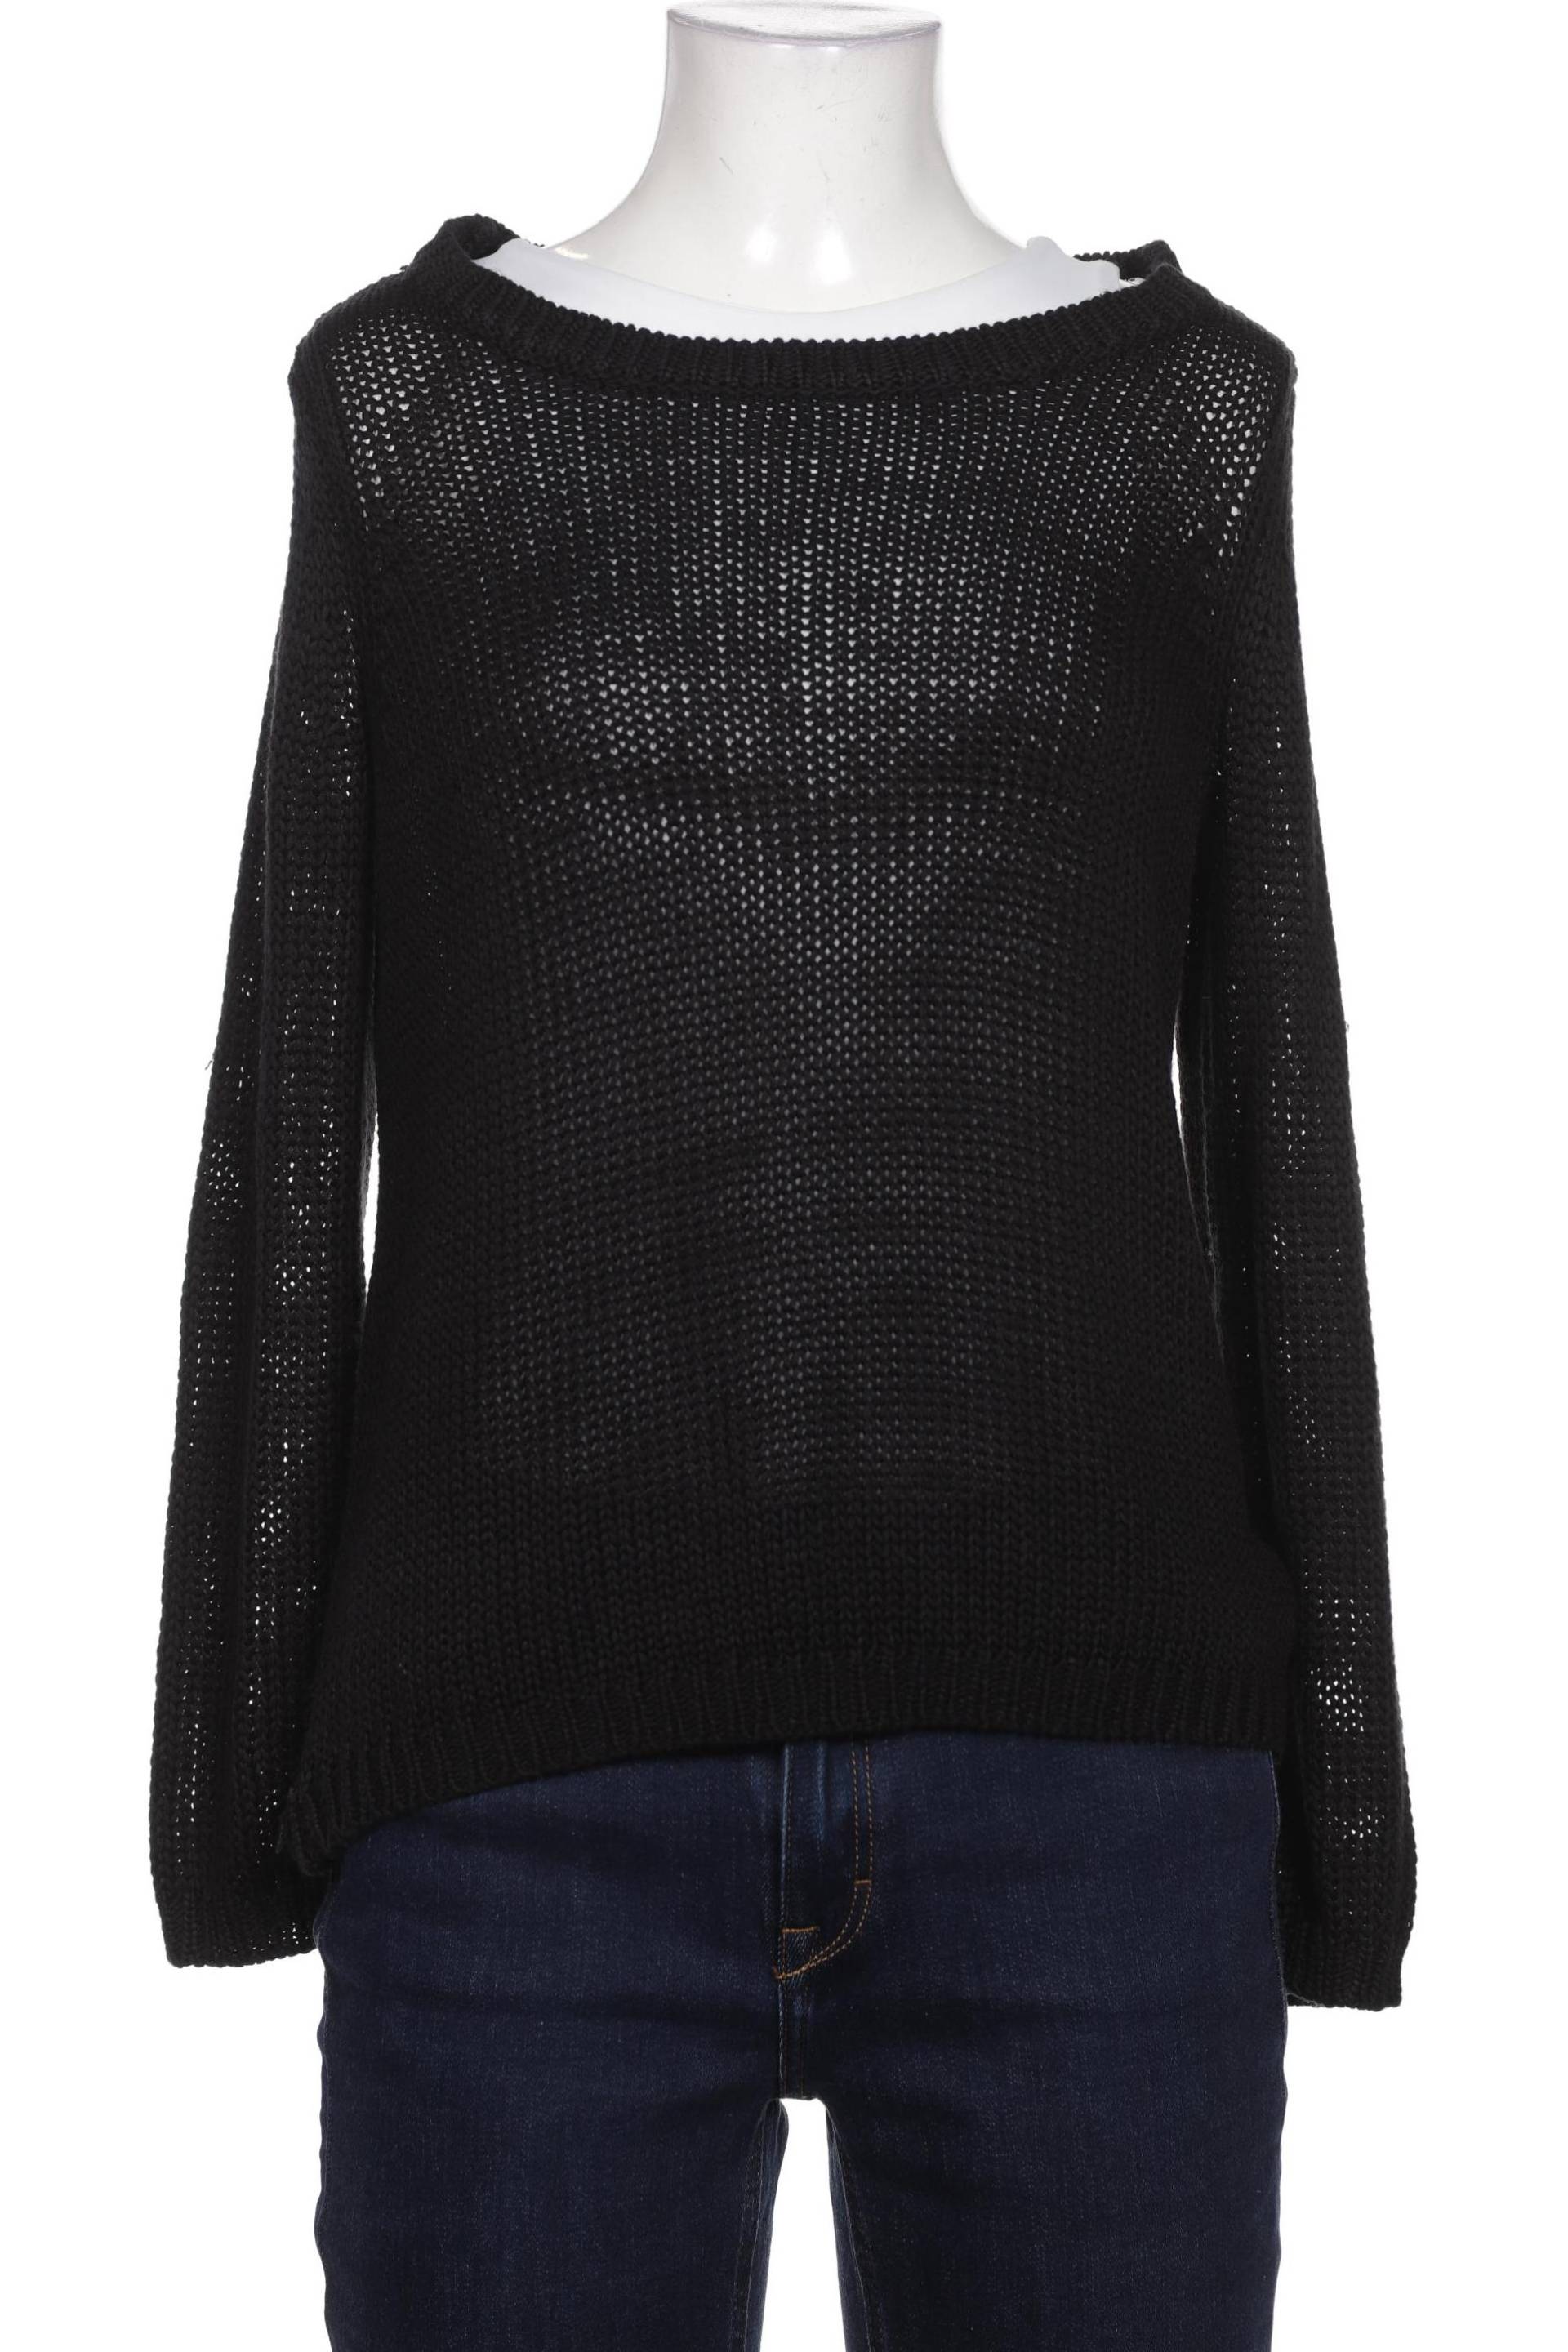 H&M Damen Pullover, schwarz, Gr. 34 von H&M